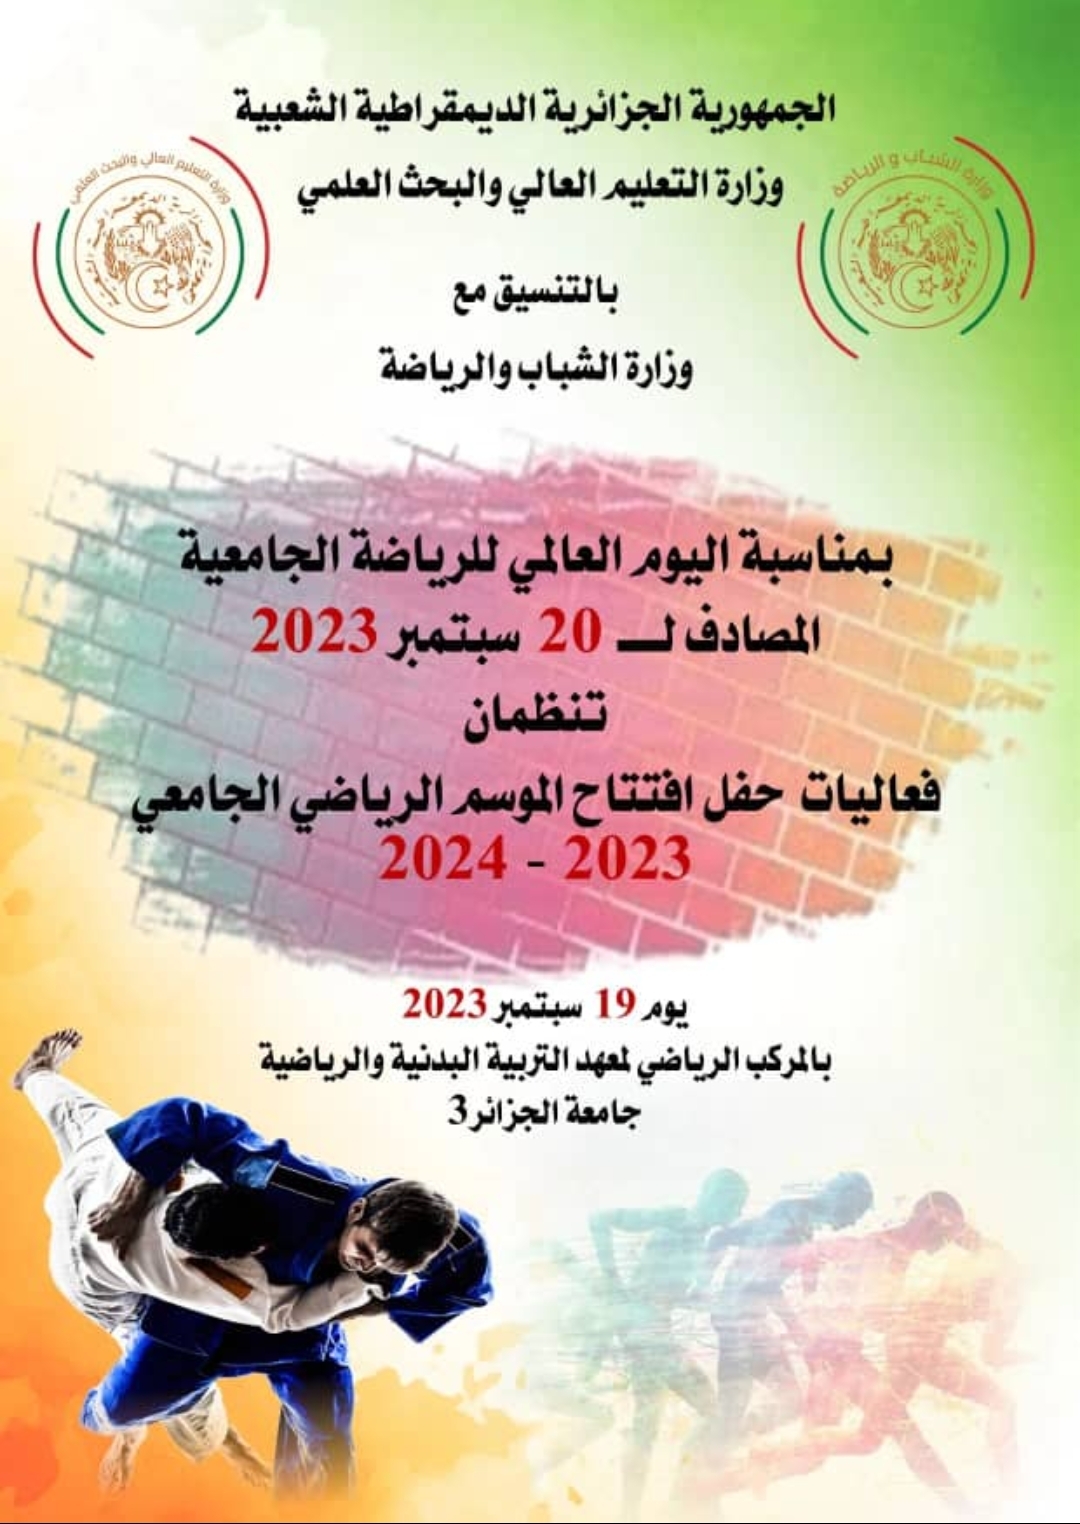 حفل افتتاح الموسم الرياضي الجامعي 2023-2024